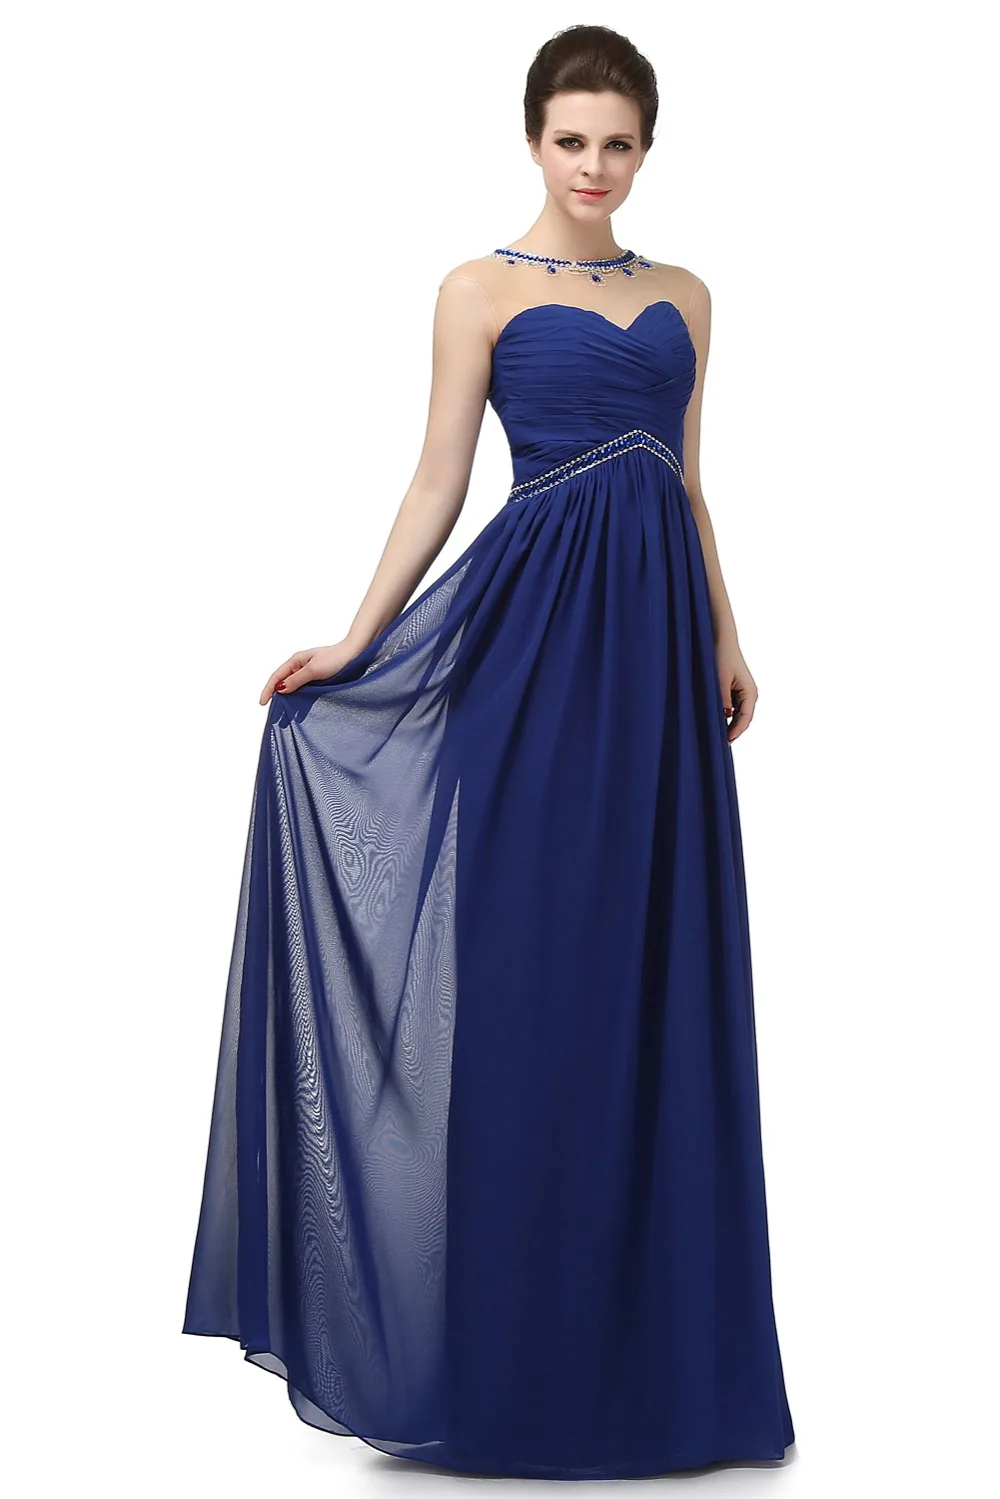 JaneVini 2018 синий длинное платье подружки невесты плюс Размеры Кристалл бисера Иллюзия женские вечерние платья шифоновое праздничное платье